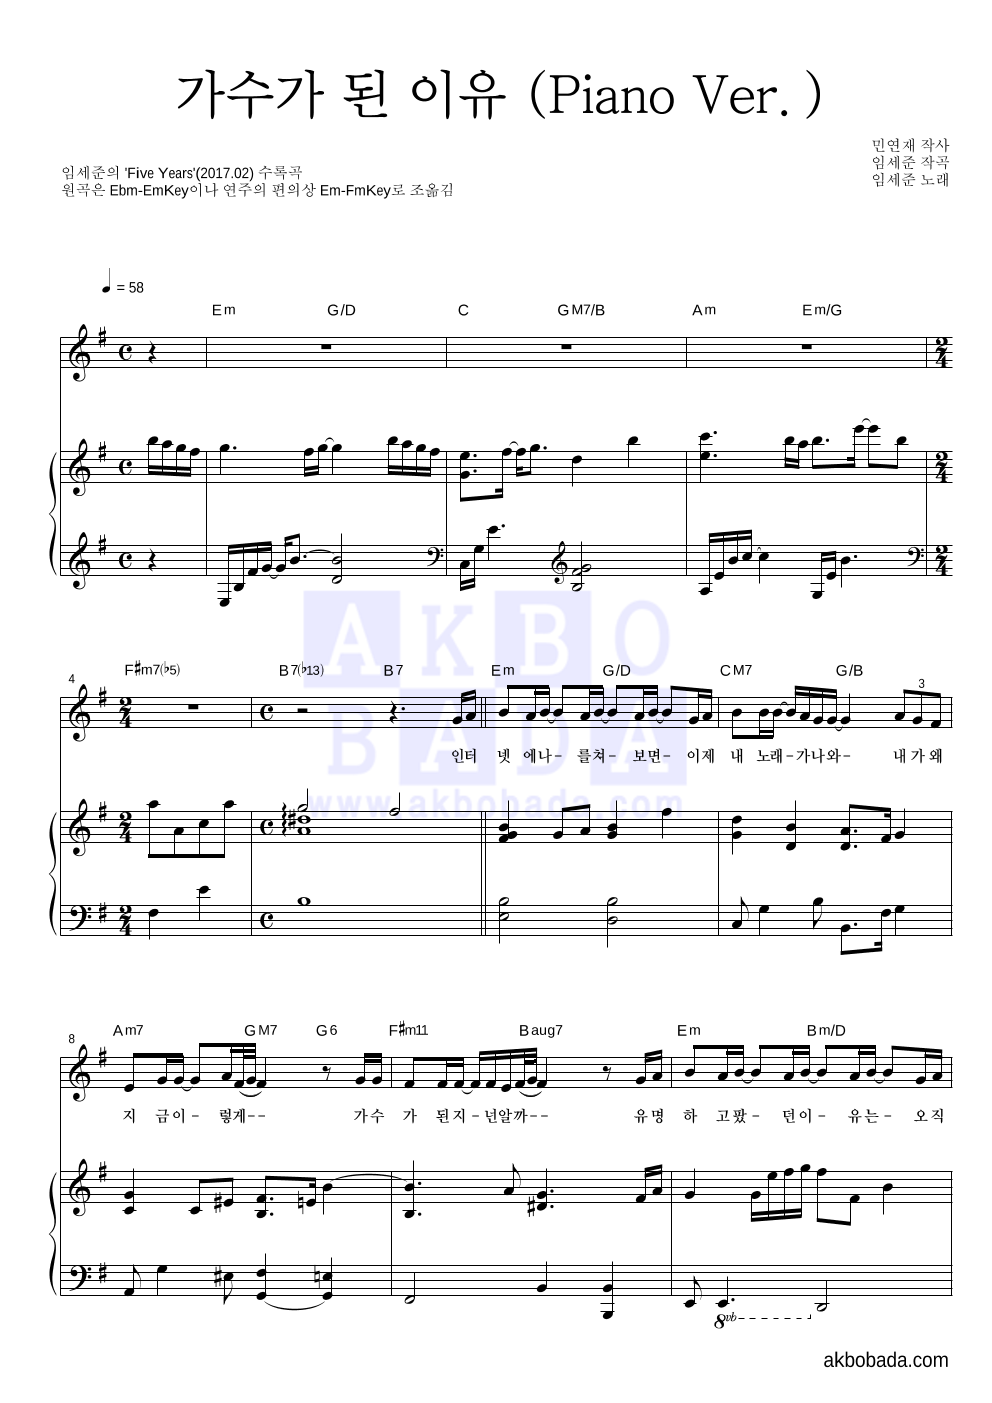 임세준 - 가수가 된 이유 (Piano Ver.) 피아노 3단 악보 